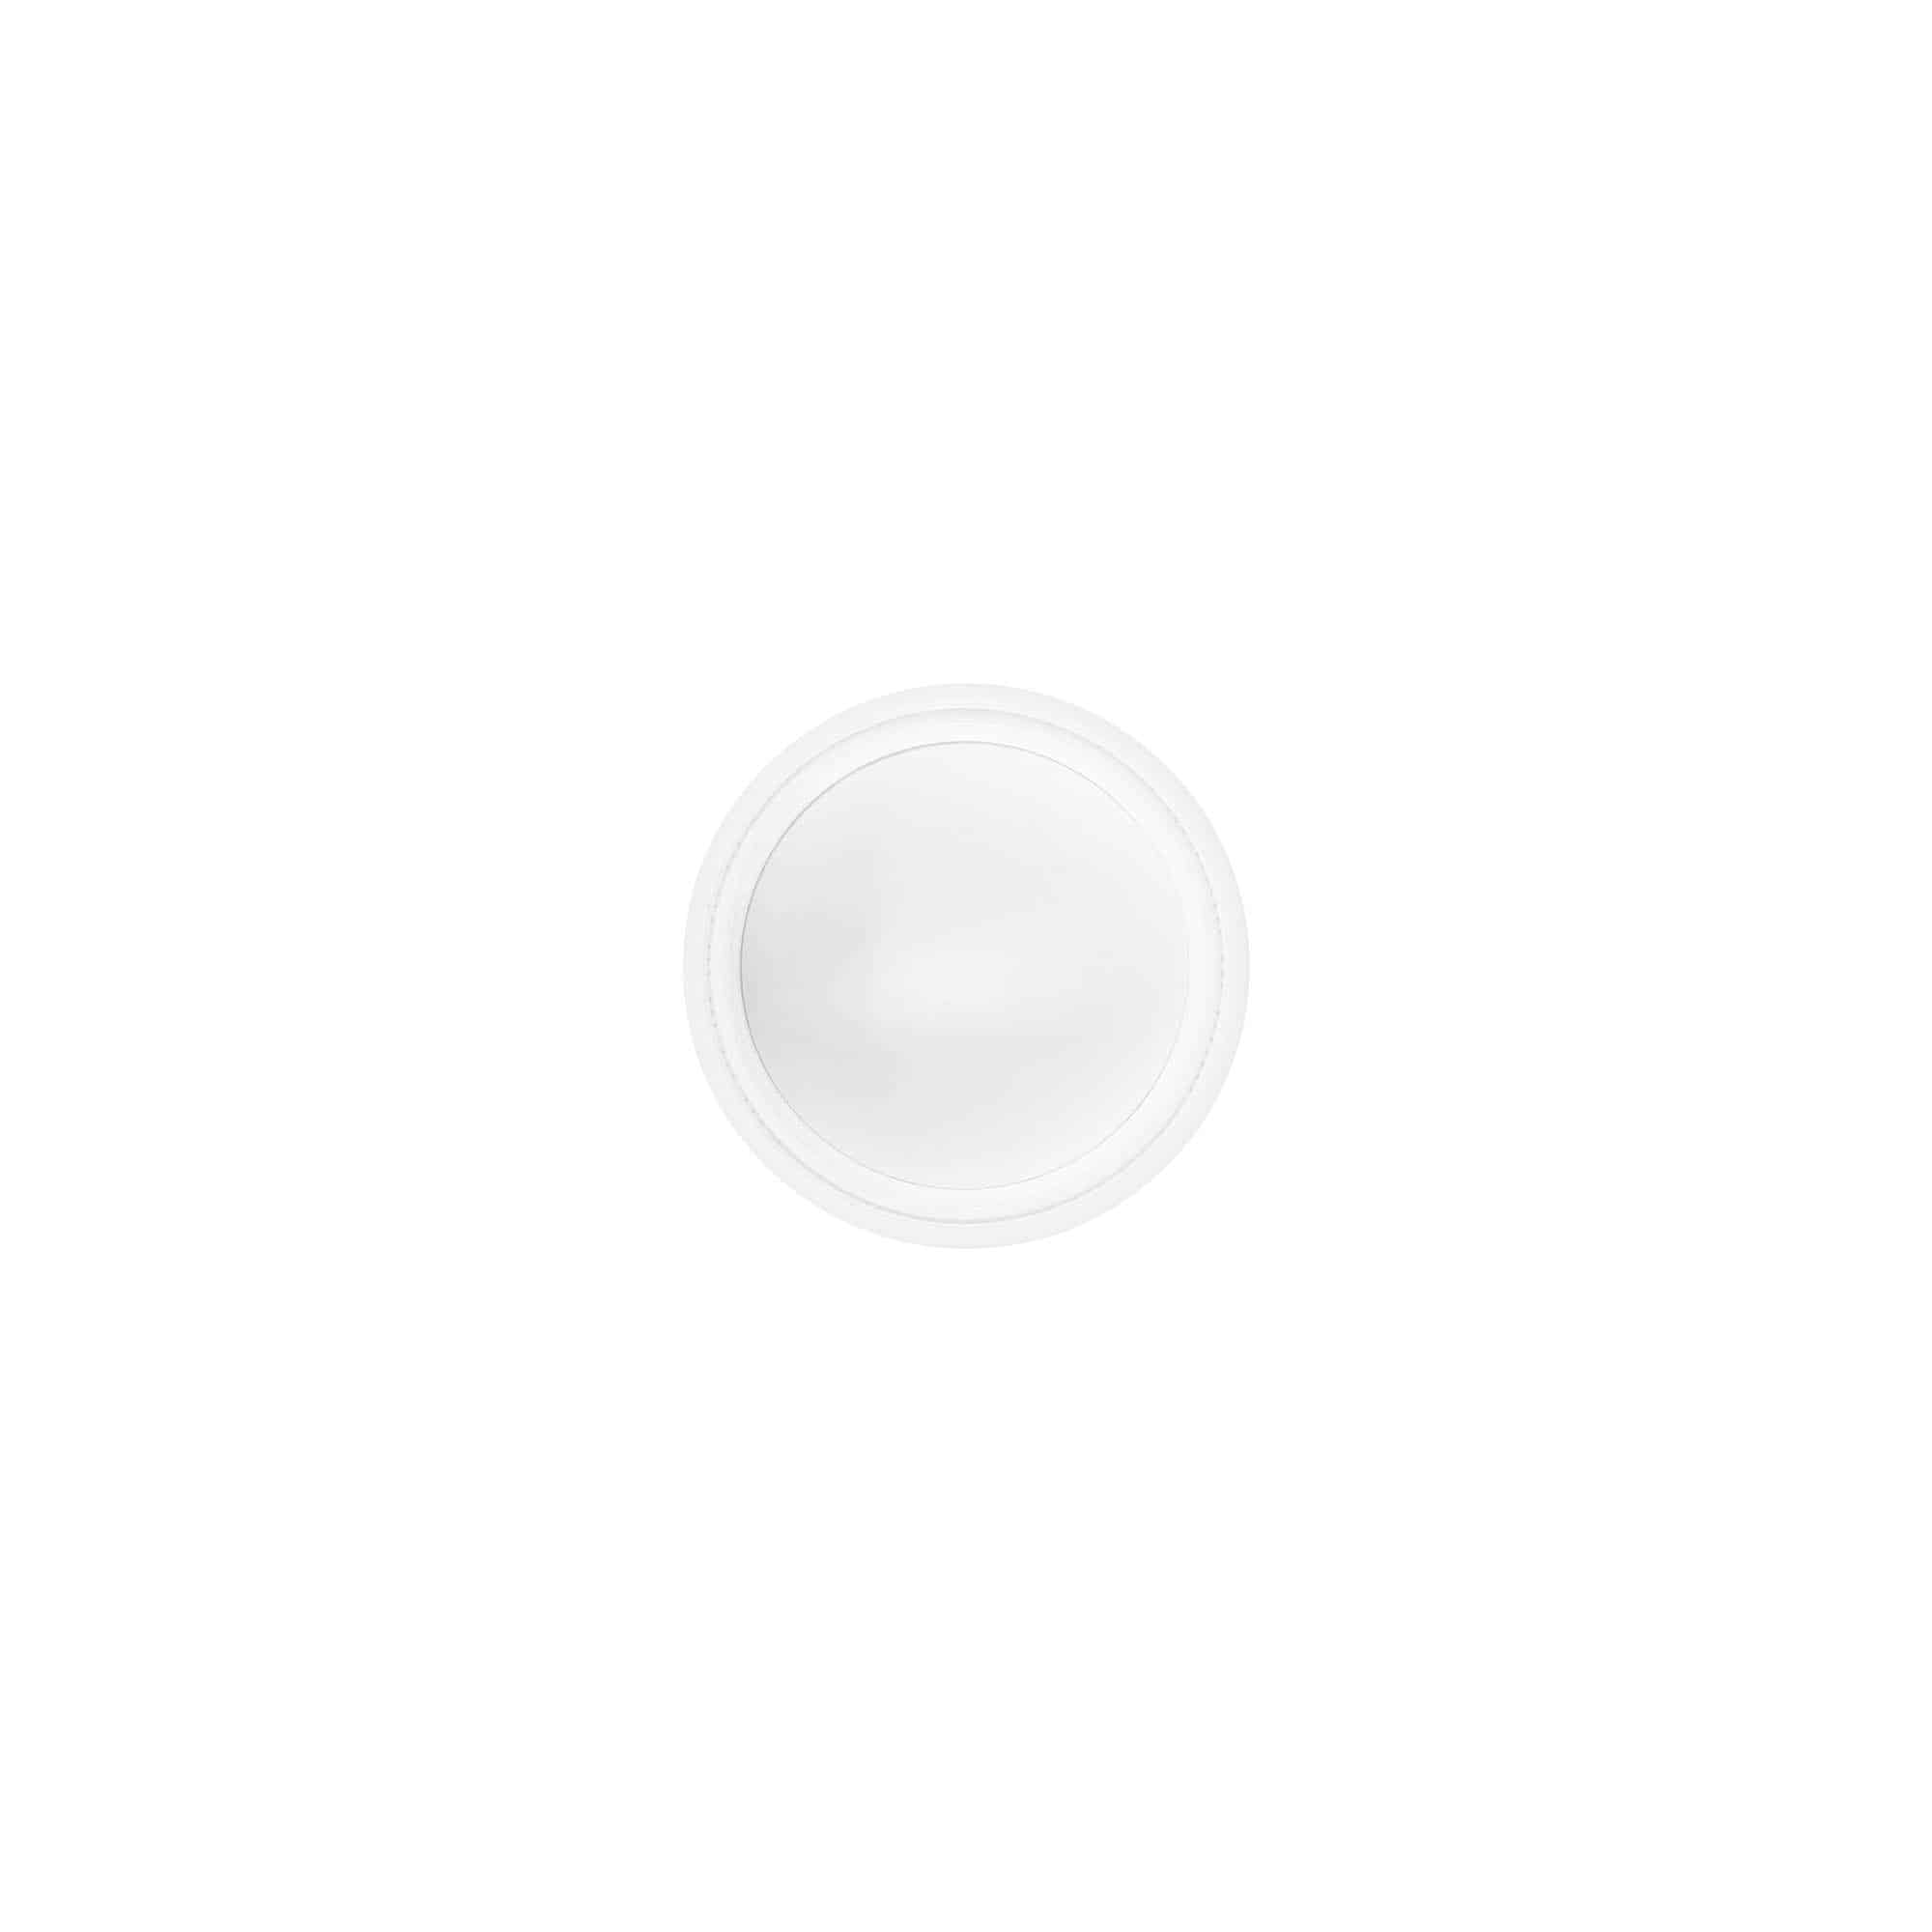 Zakrętka 10 ml , tworzywo sztuczne SAN, kolor biały